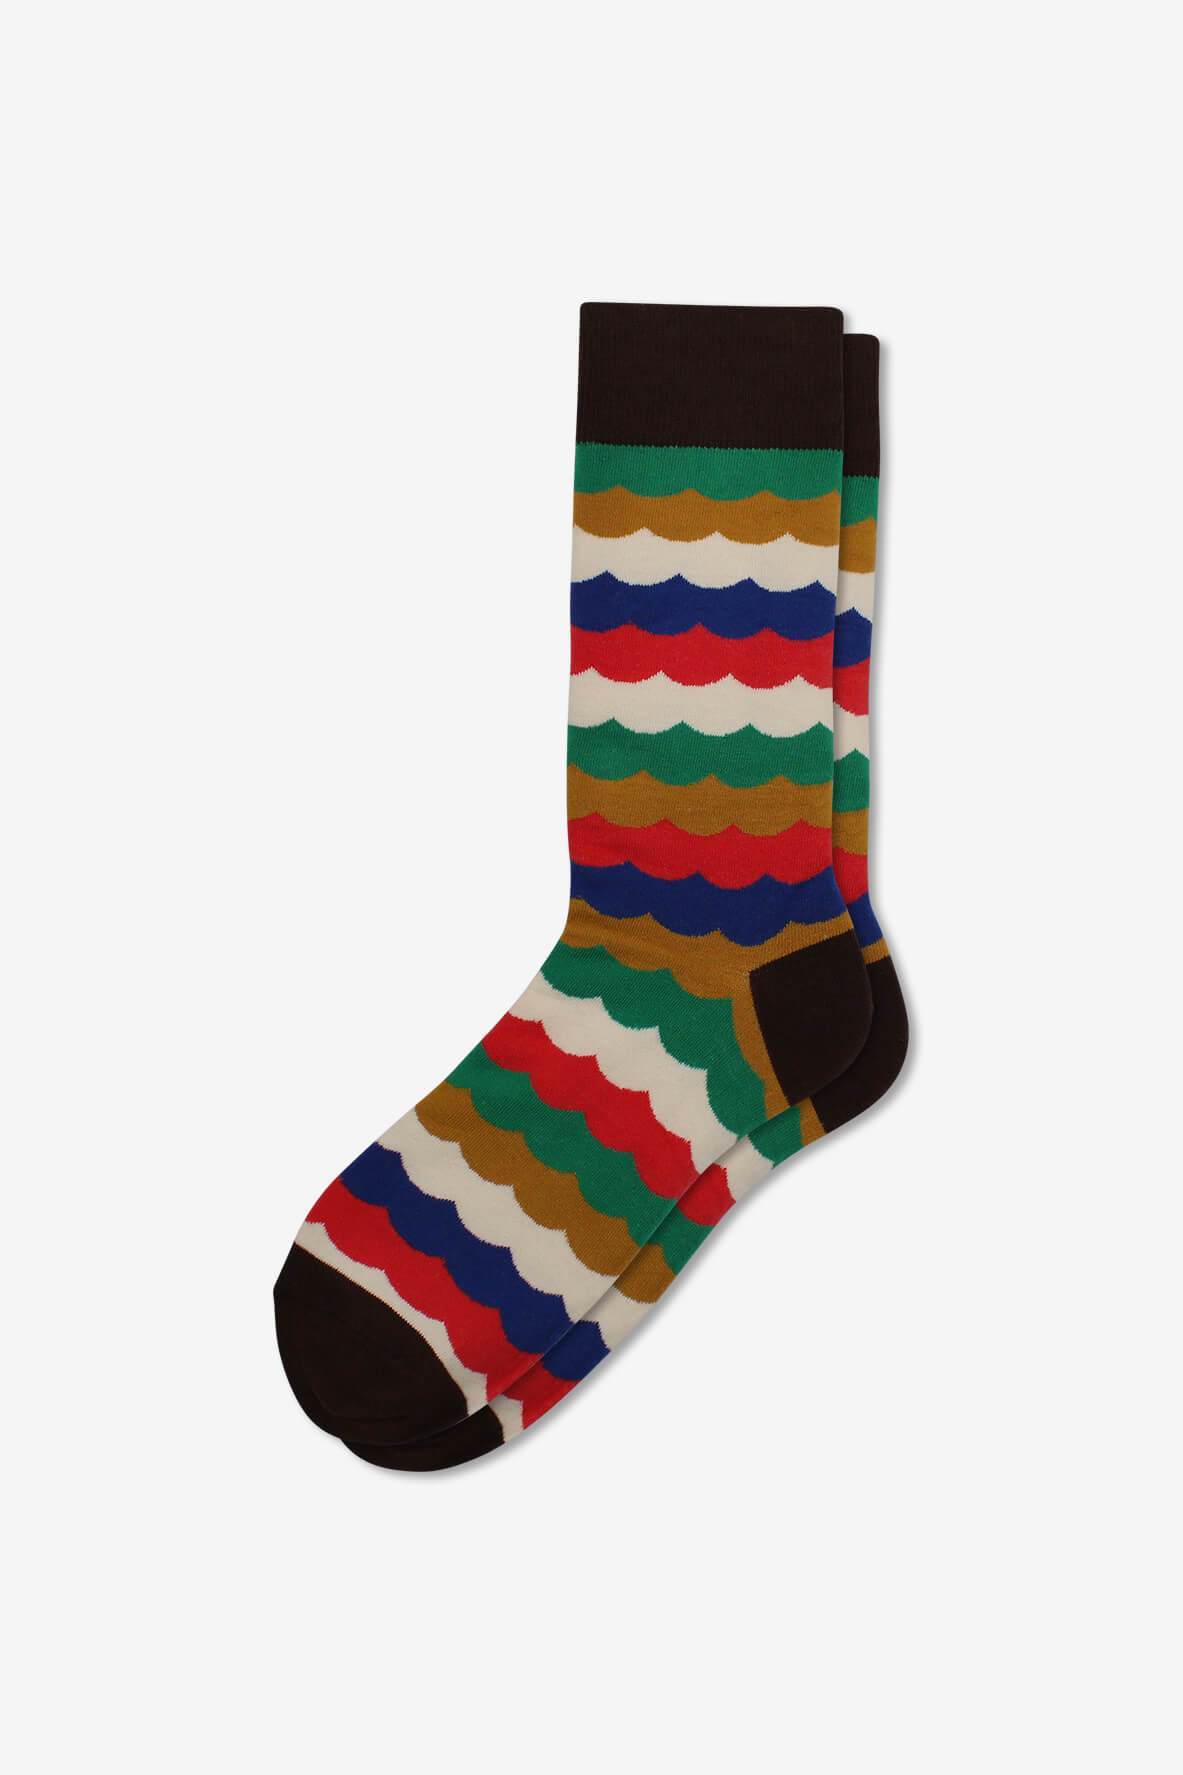 Socks IMG_5371, socks, GoTie